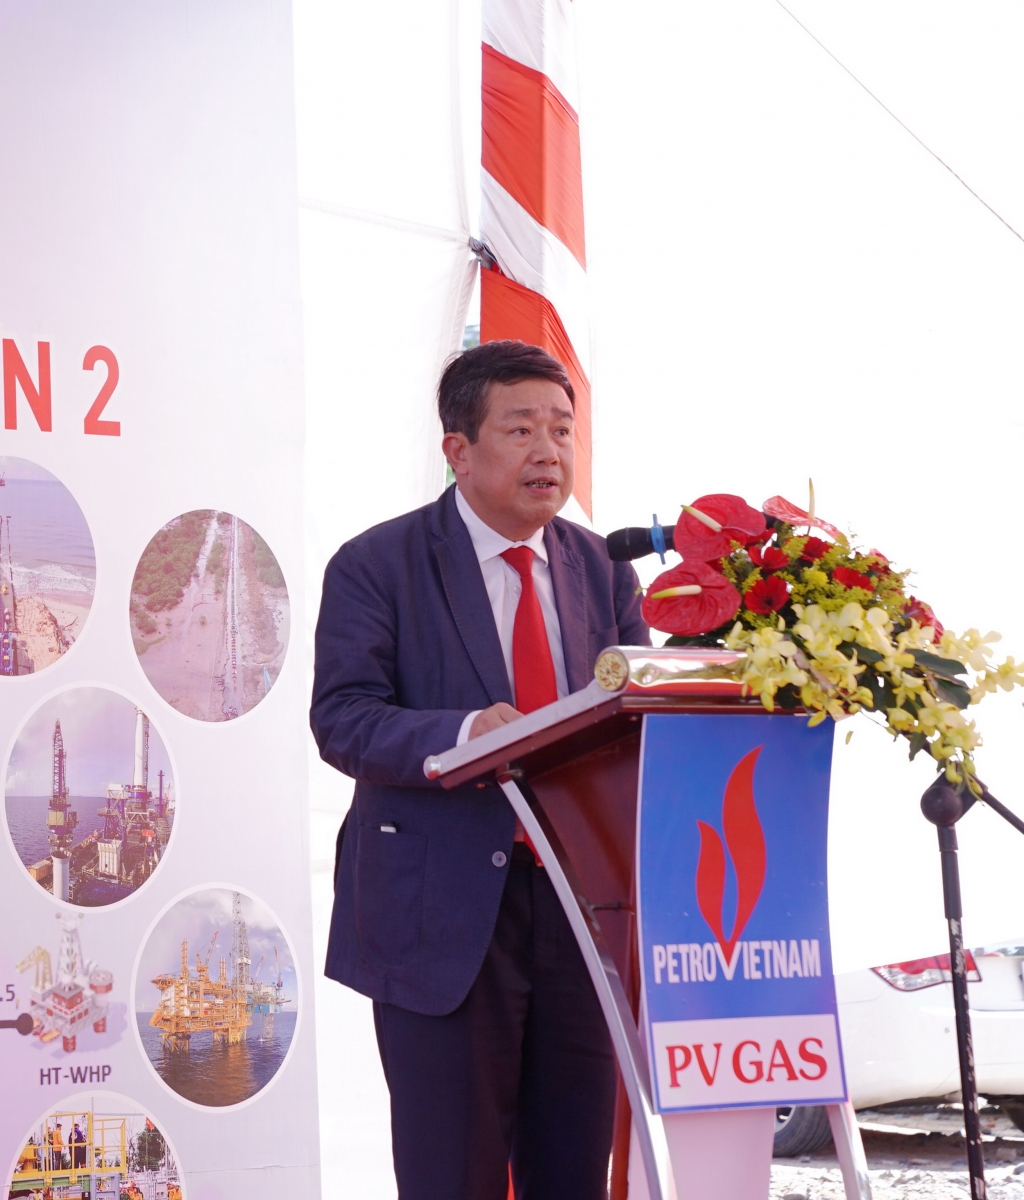 Phát biểu của ông Phạm Xuân Cảnh – Phó Bí thư Thường trực Đảng ủy, Thành viên Hội đồng thành viên PVN